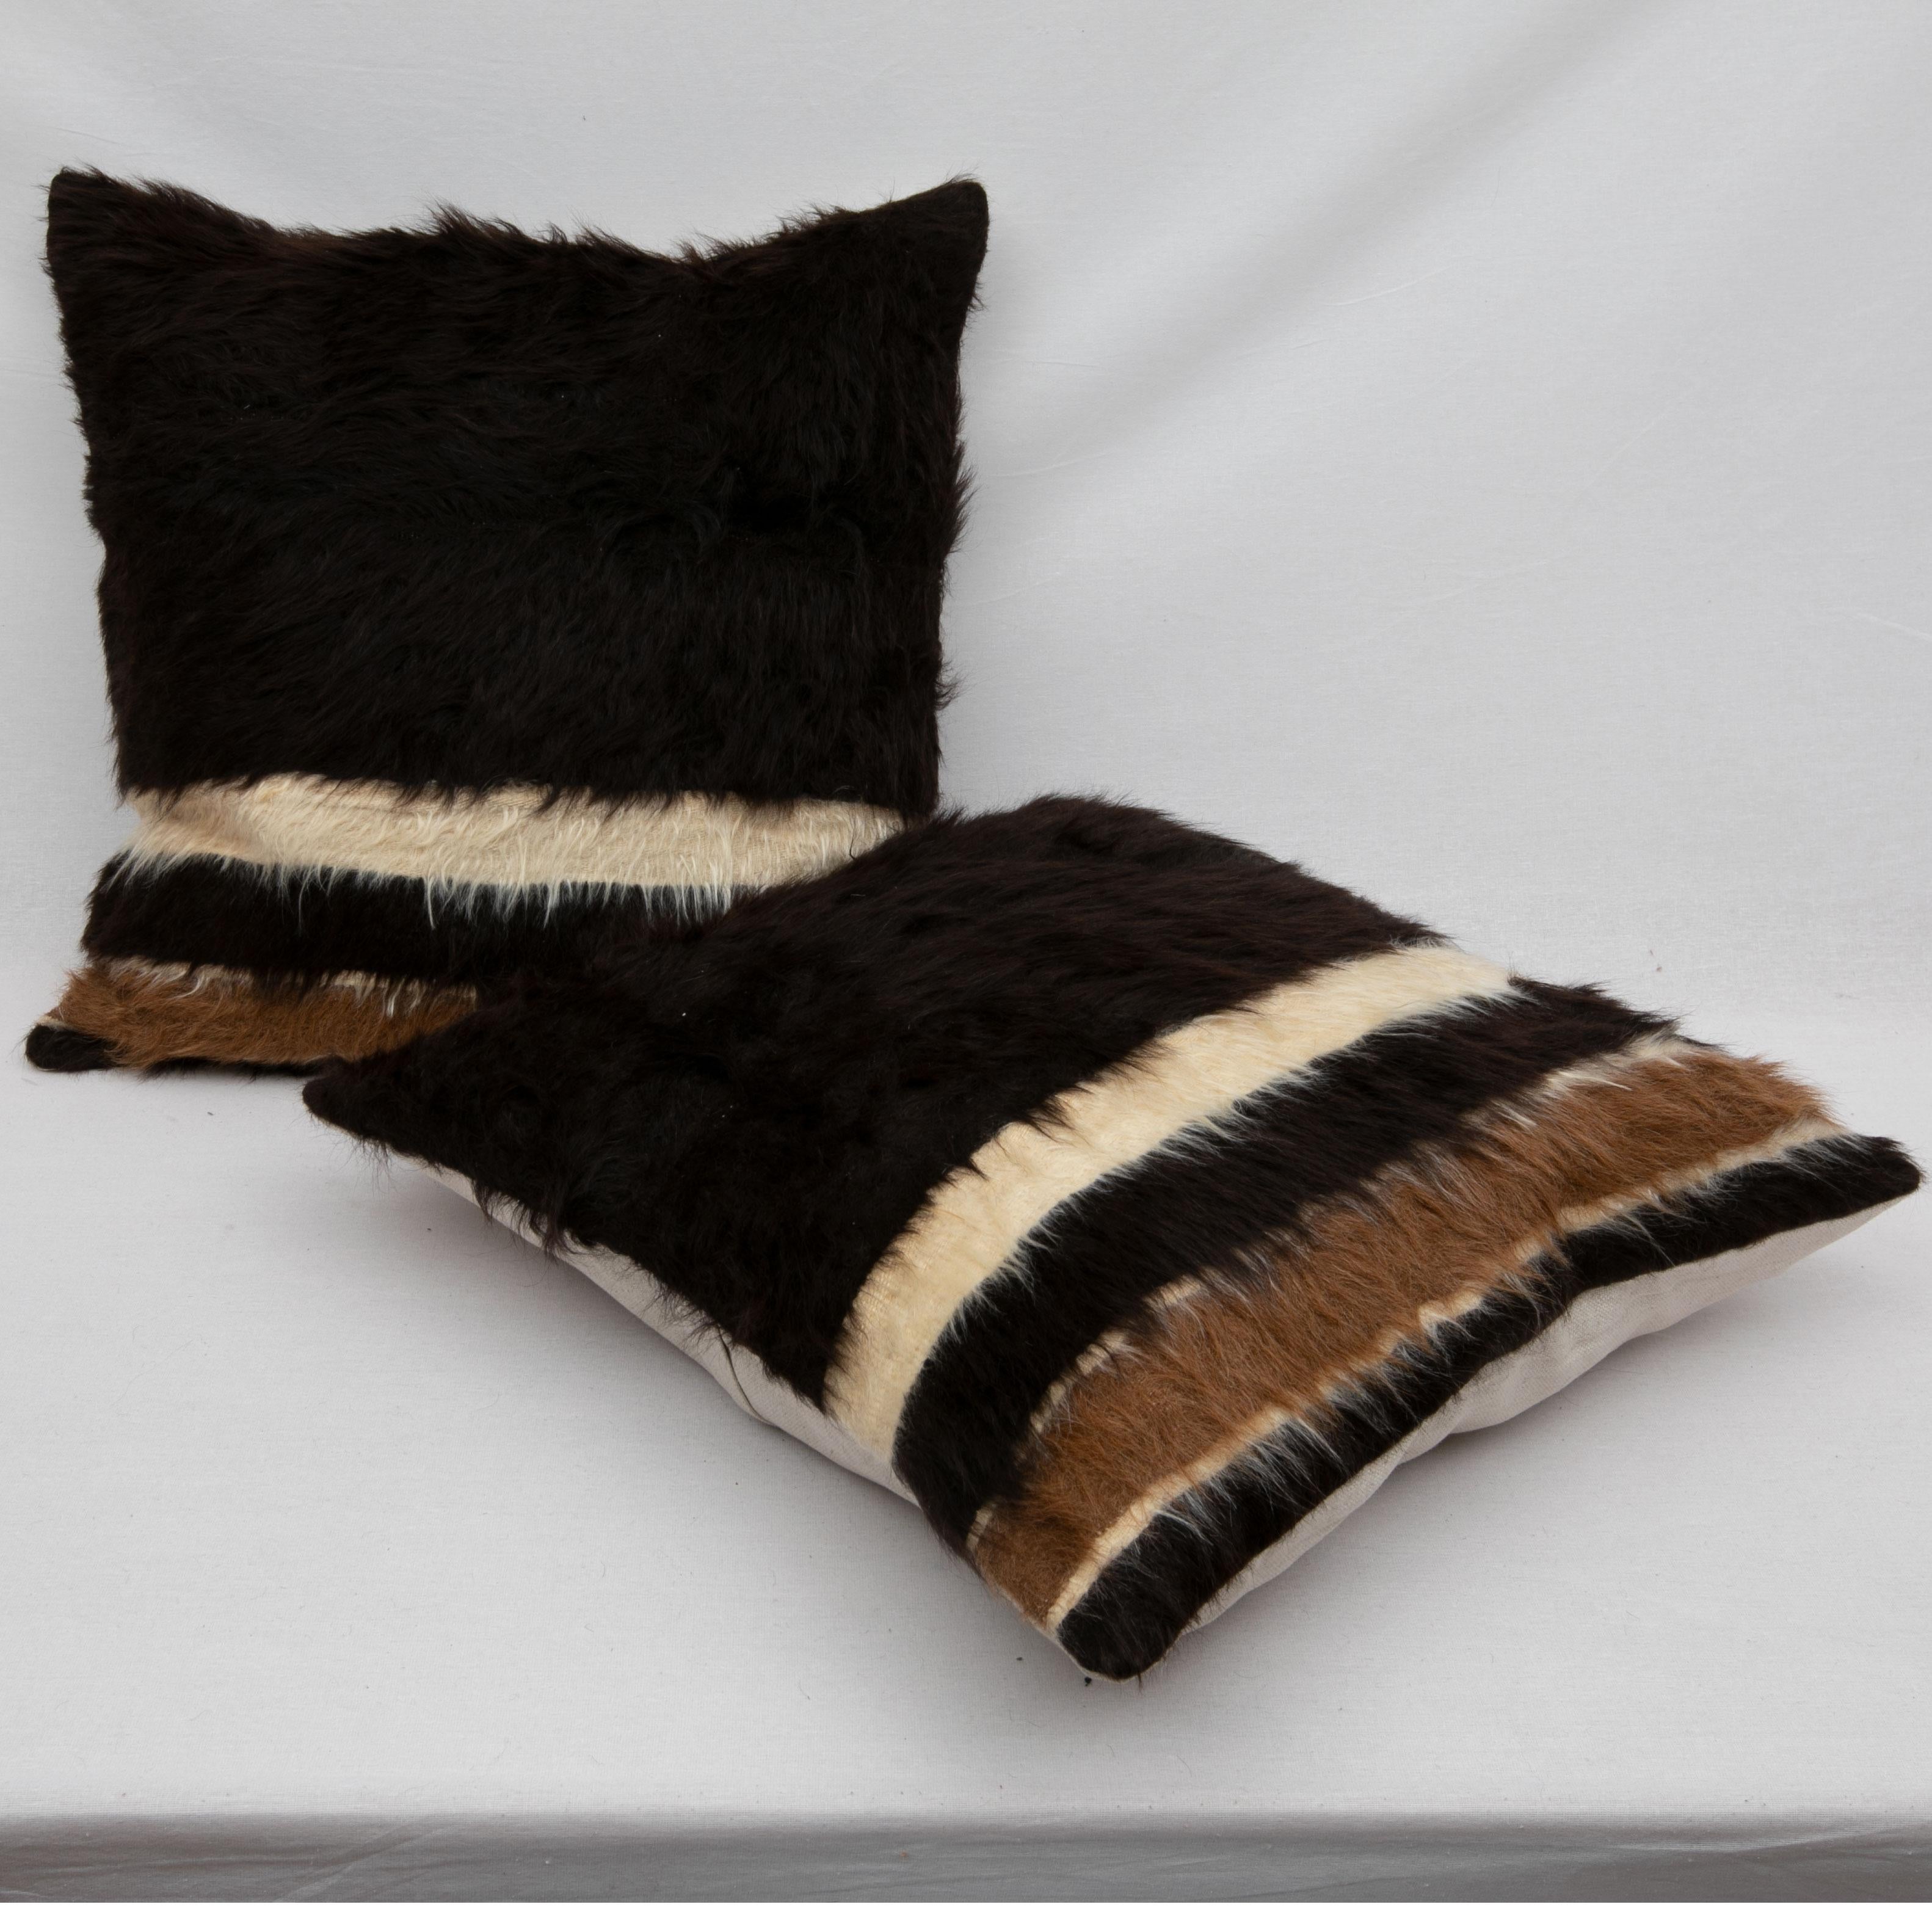 Ces oreillers sont fabriqués à partir d'Angora vintage Siirt (une ville du sud-est de la Turquie).
Siirt est célèbre pour ces couvertures fabriquées à partir de poils de chèvre angora. On pense que l'Angora porte le nom de la capitale de la